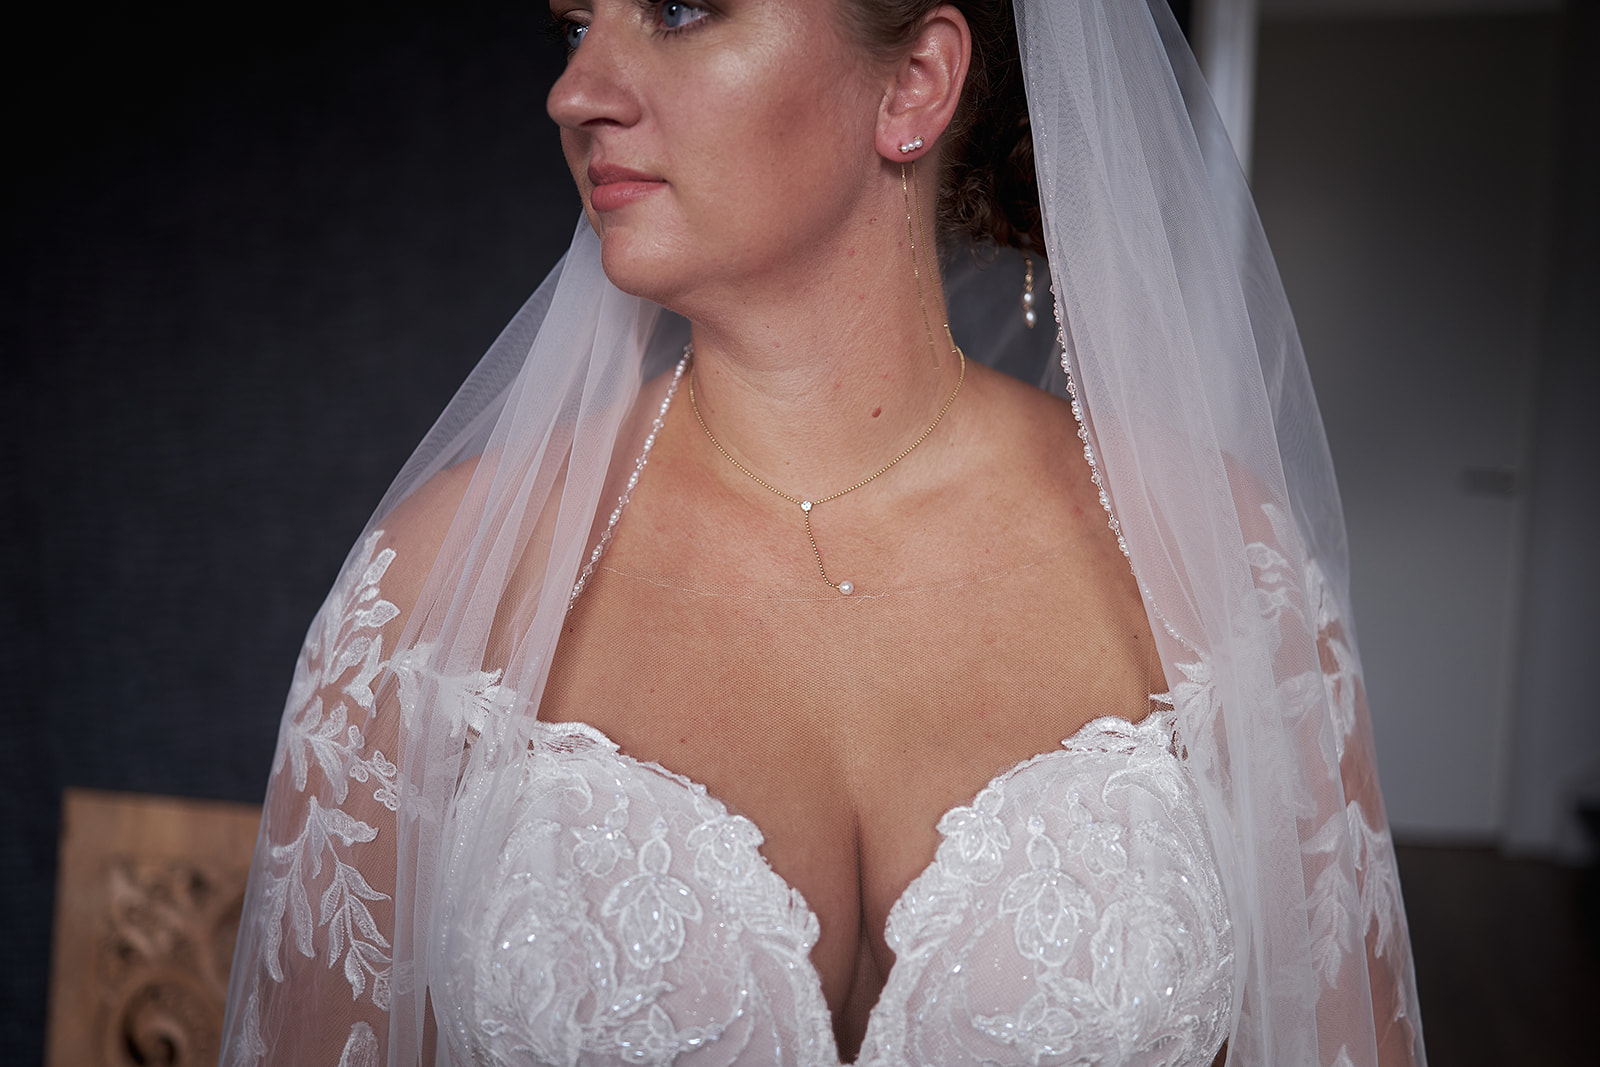 Romantische bruidsfotografie in Haarlem: Trouwshoot van Liëla en Jeffrey, vastgelegd door Stefan Segers